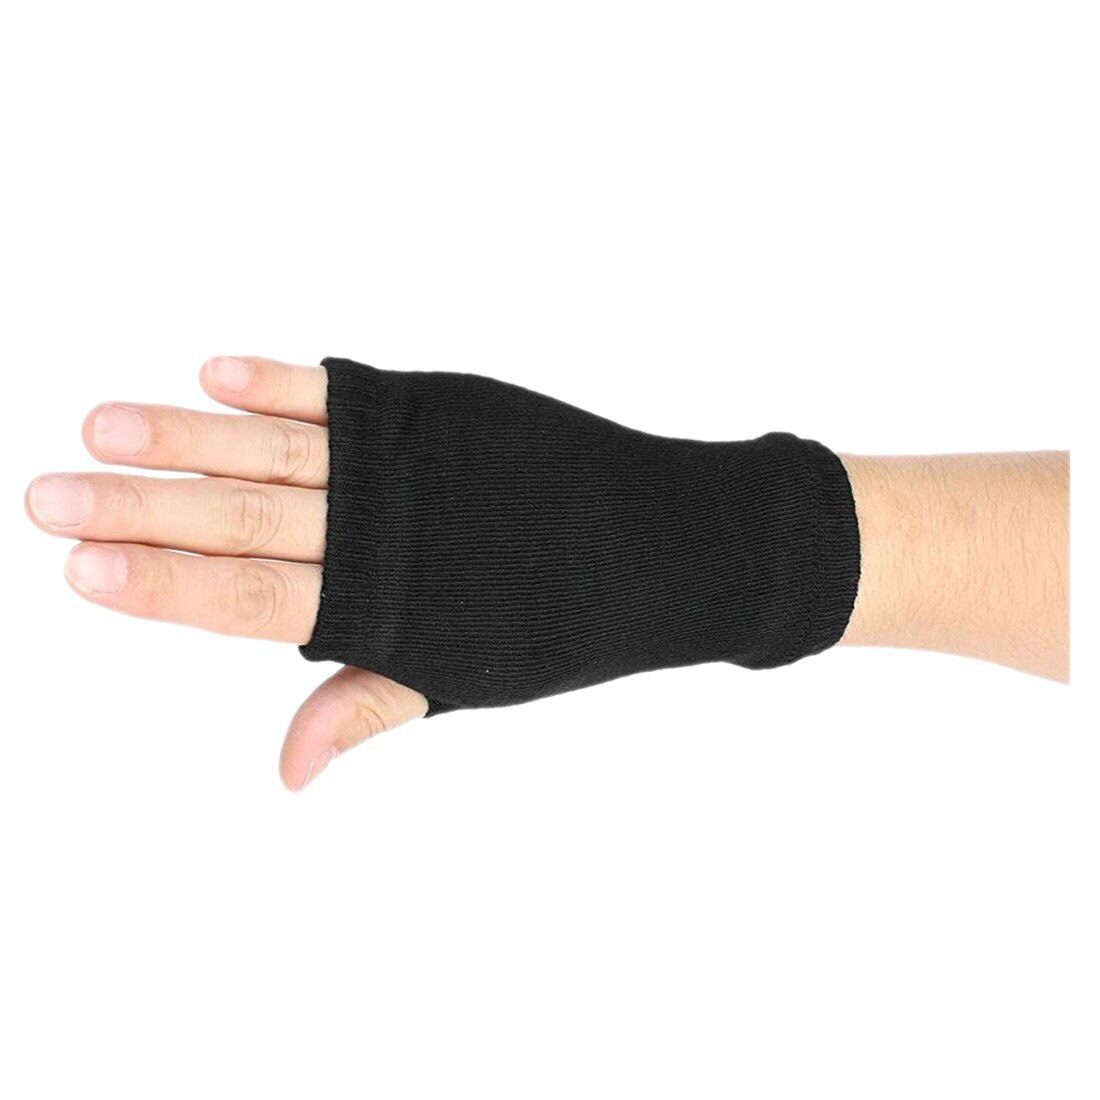 Sort elastisk kæmmet bomulds fingerløse handsker til kvinder